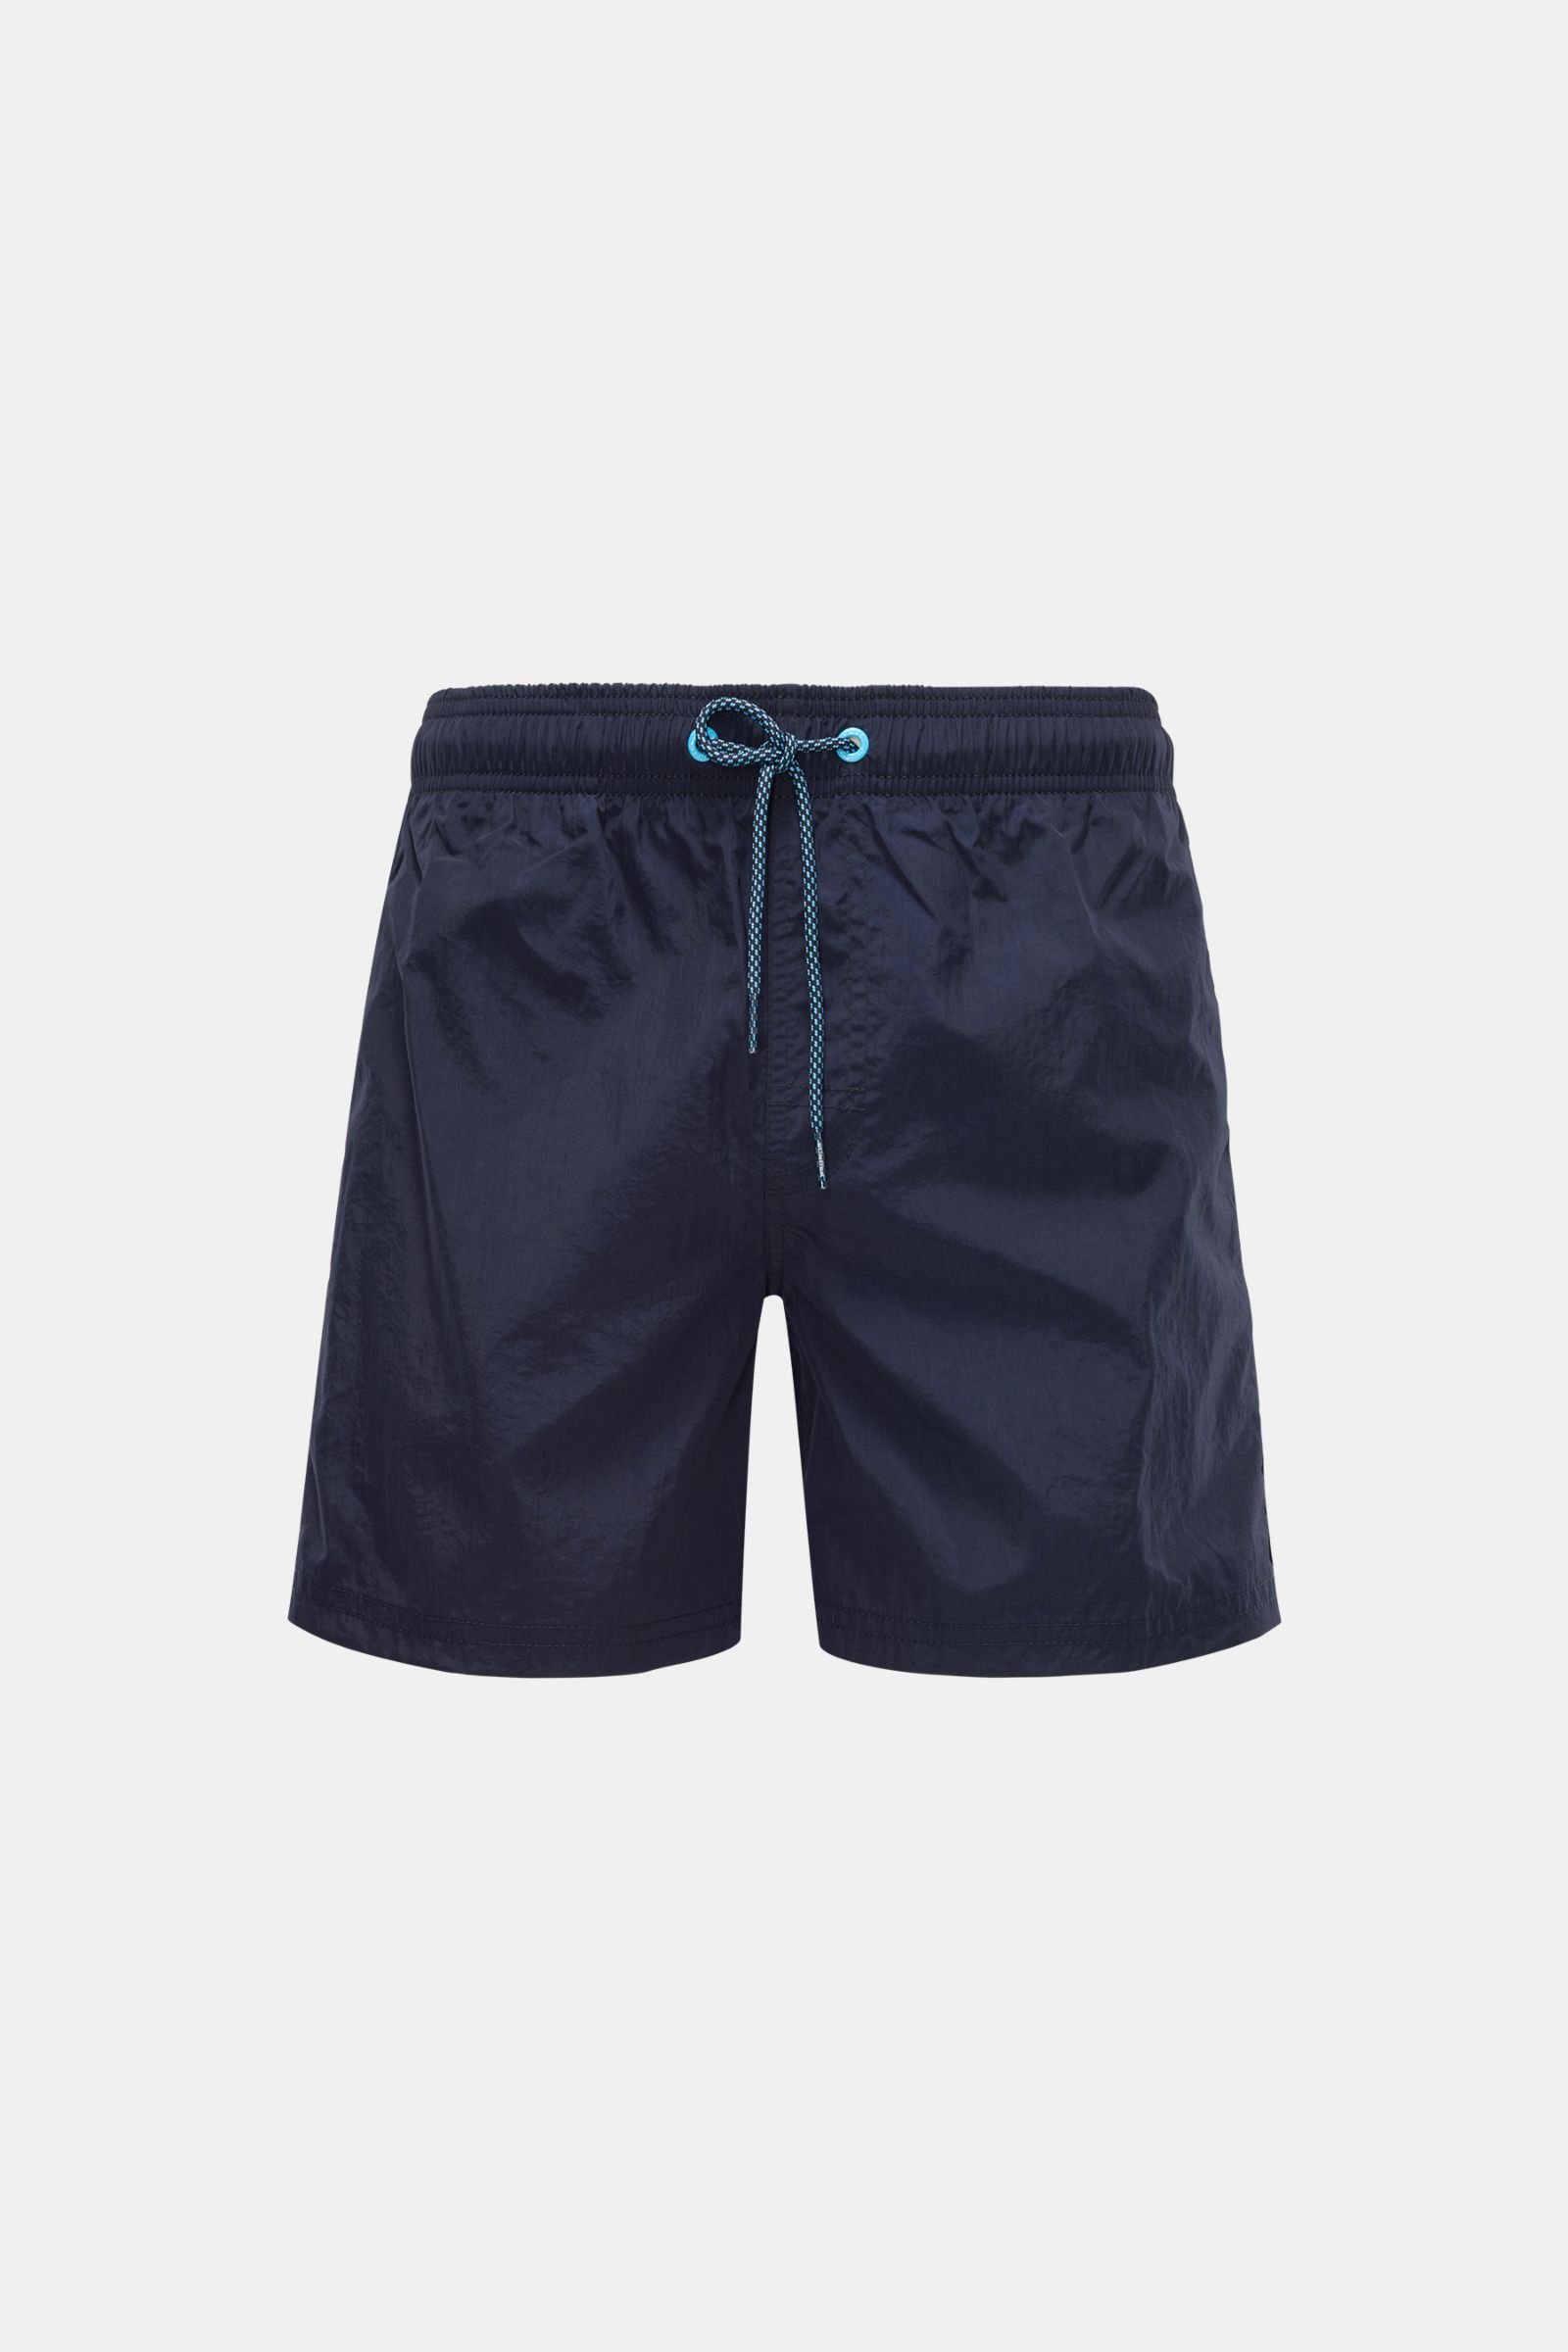 Swim shorts dark navy